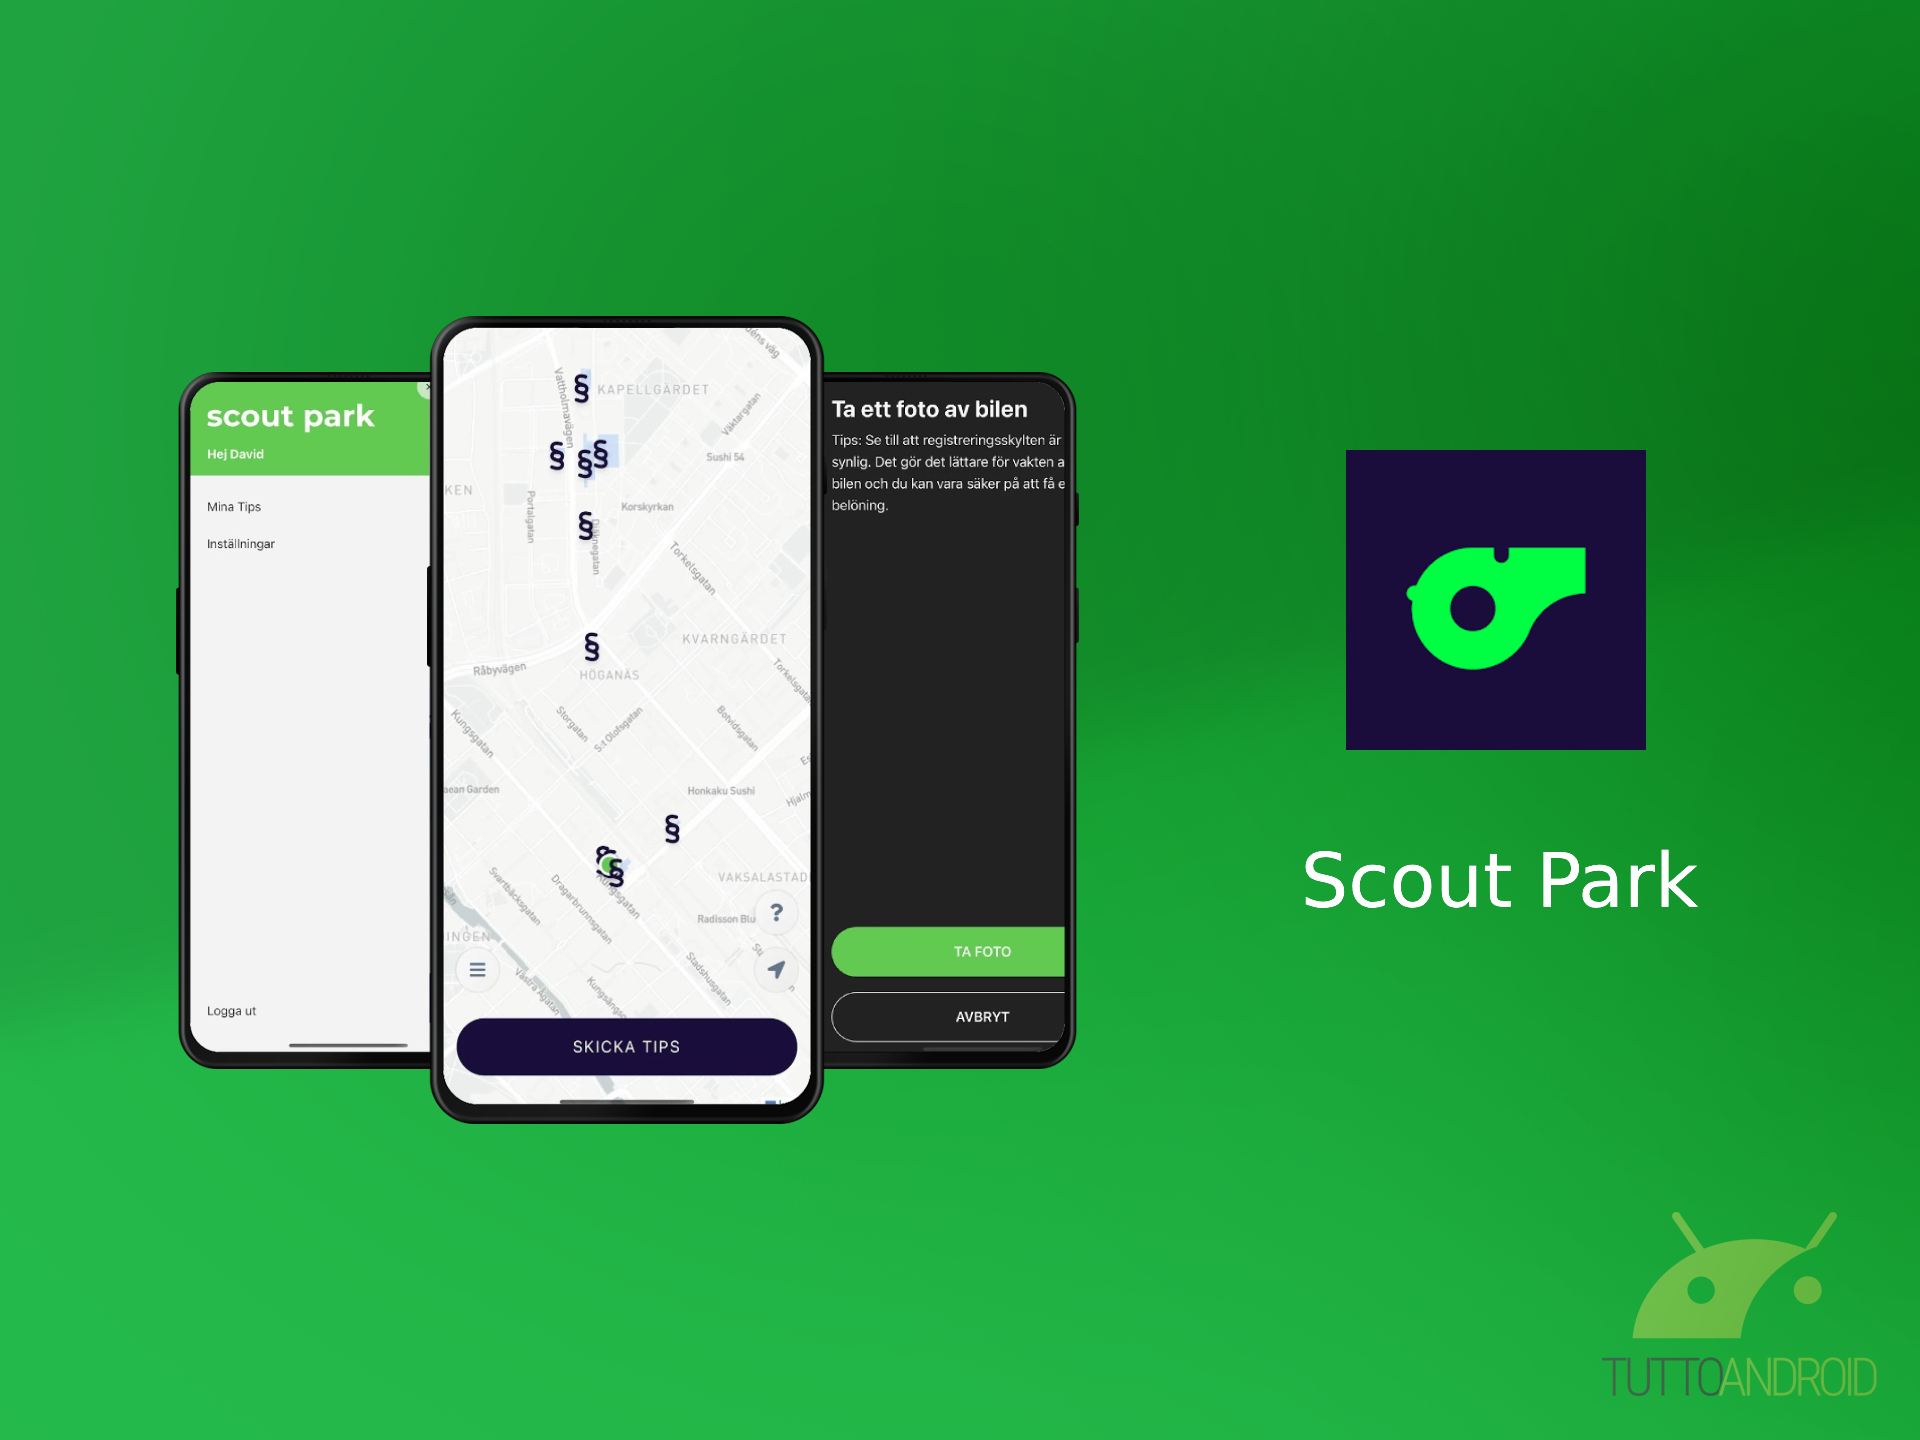 L’app Scout Park permette di guadagnare segnalando le auto parcheggiate male